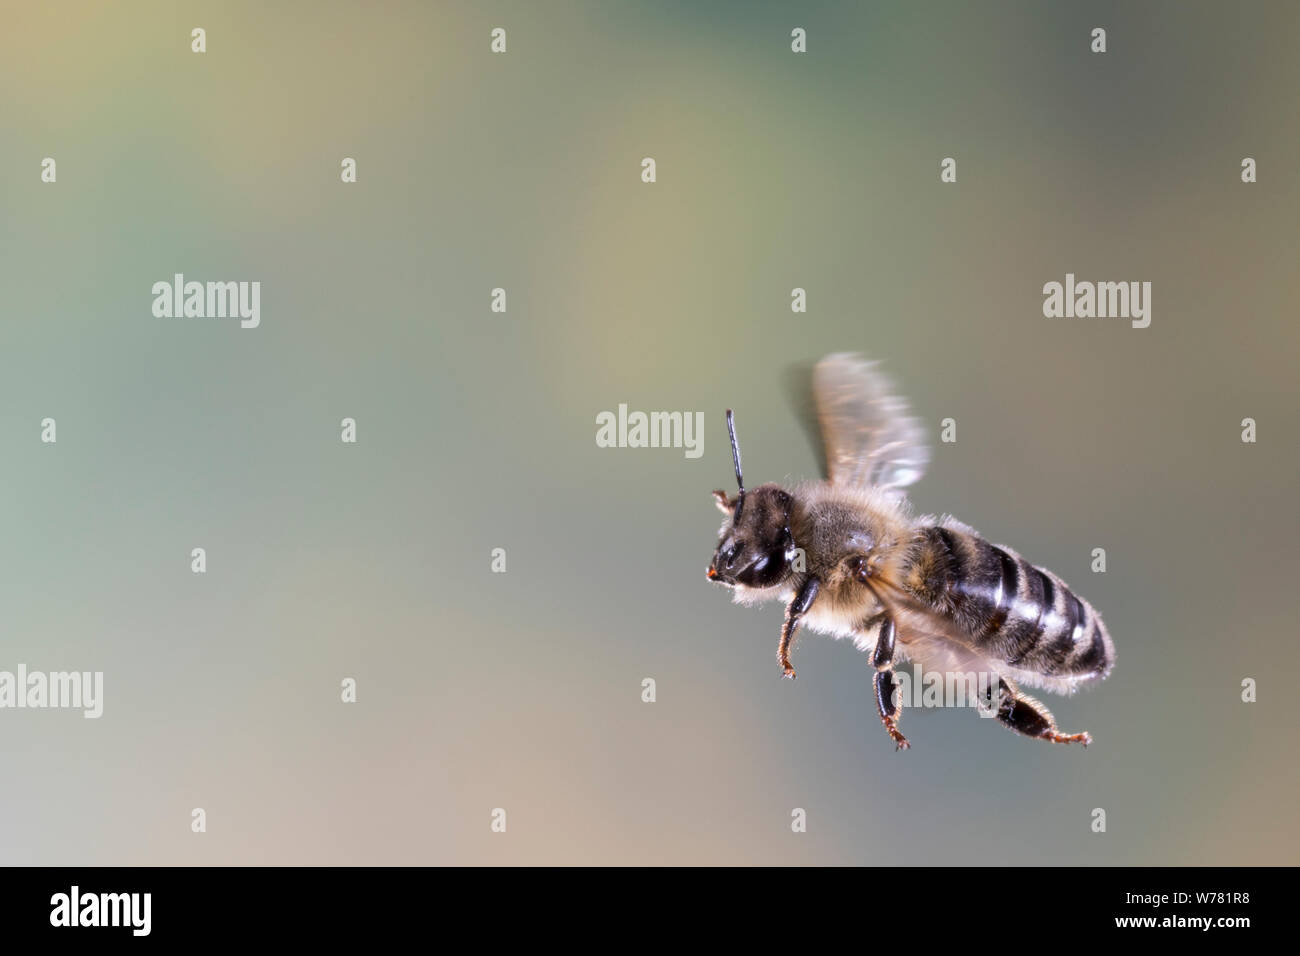 Honigbiene, Honig-Biene, Europäische Honigbiene, Braunschweiger Honigbiene, Flug, fliegend, Biene, Bienen, Apis mellifera, Apis mellifica, abeille, ruche Banque D'Images